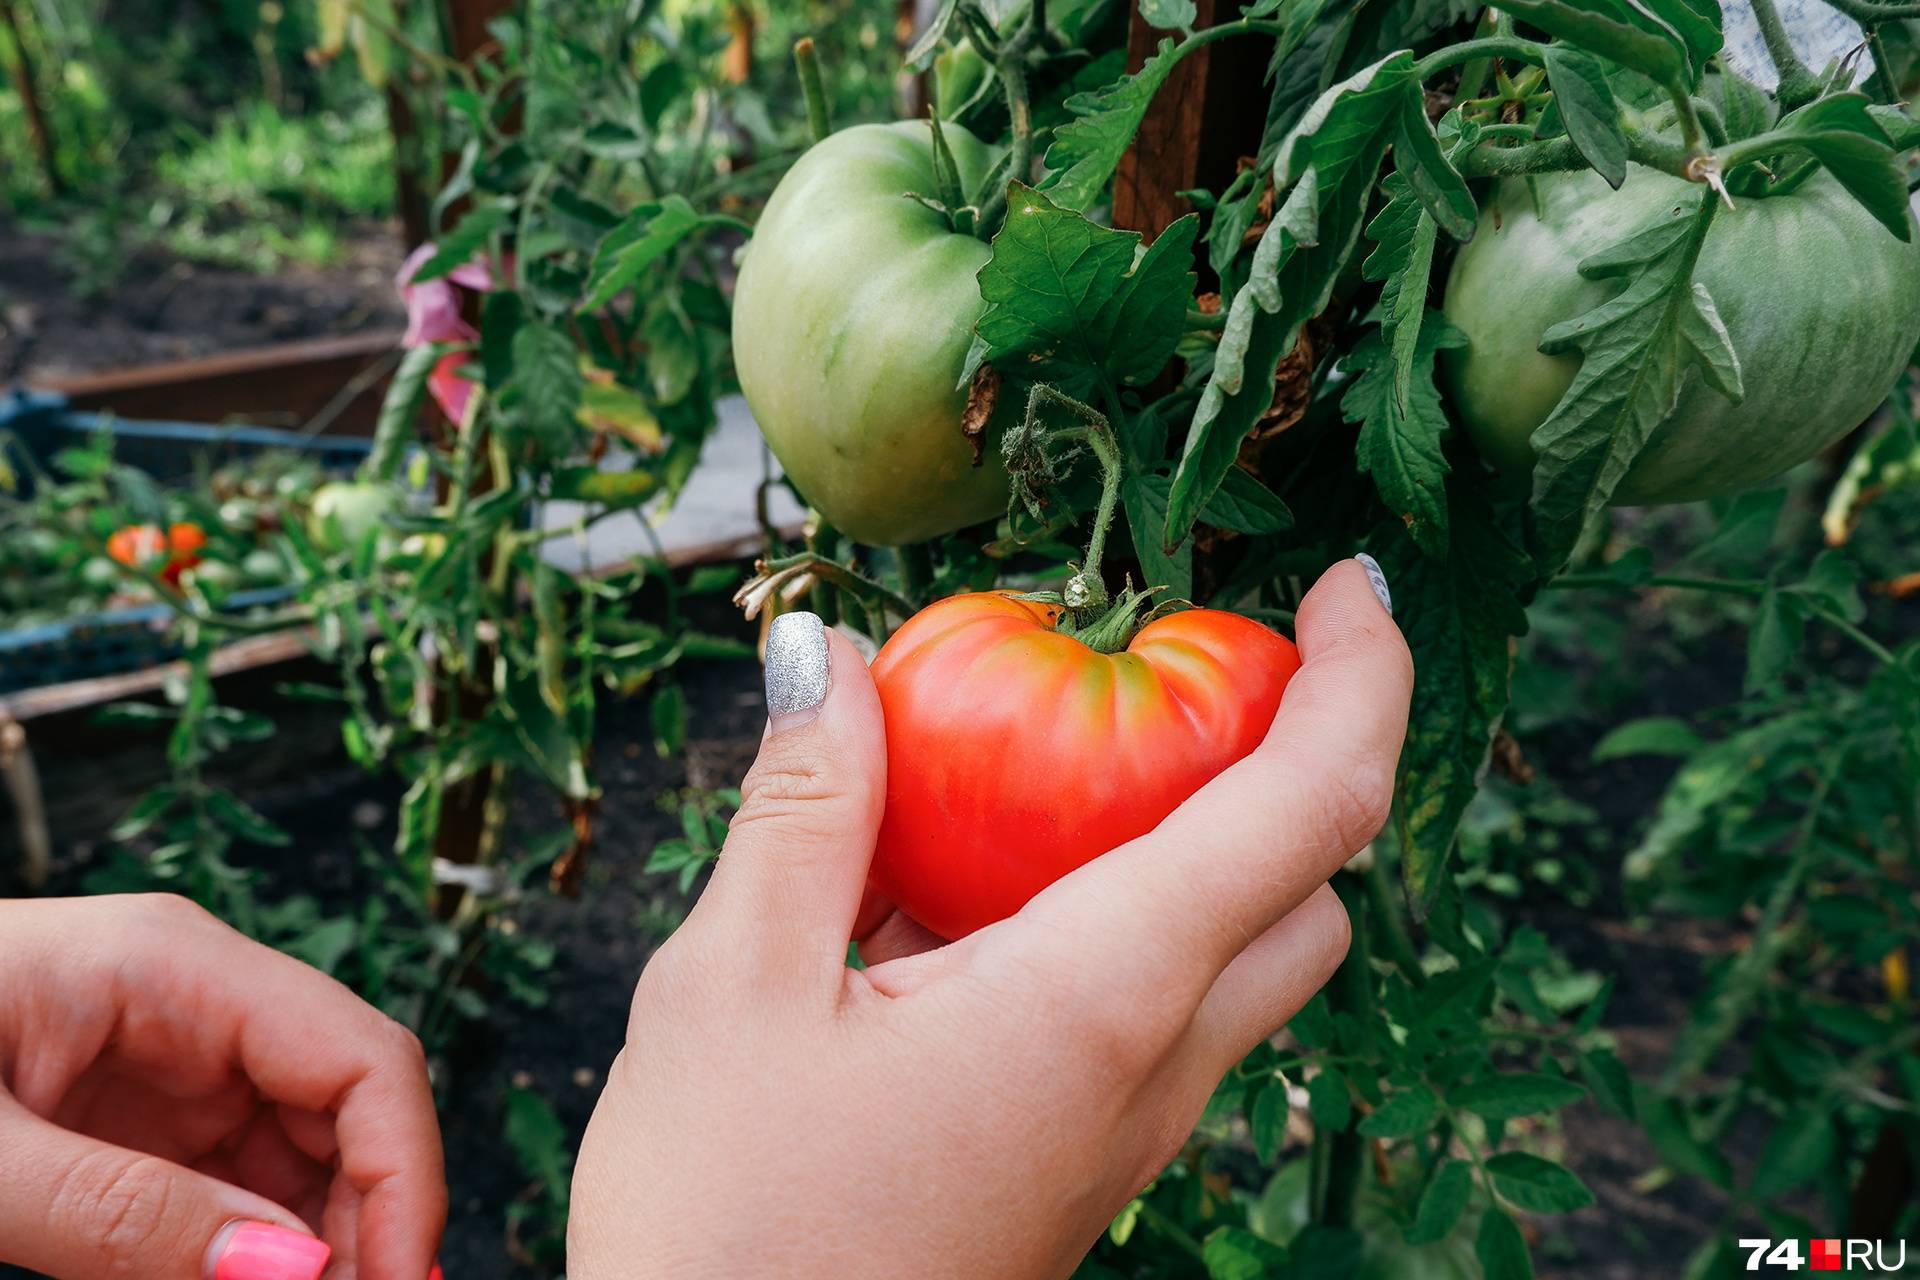 Лучшие сорта томатов (помидоров) на 2021 год для урала и сибири. отзывы и фото сортов томатов